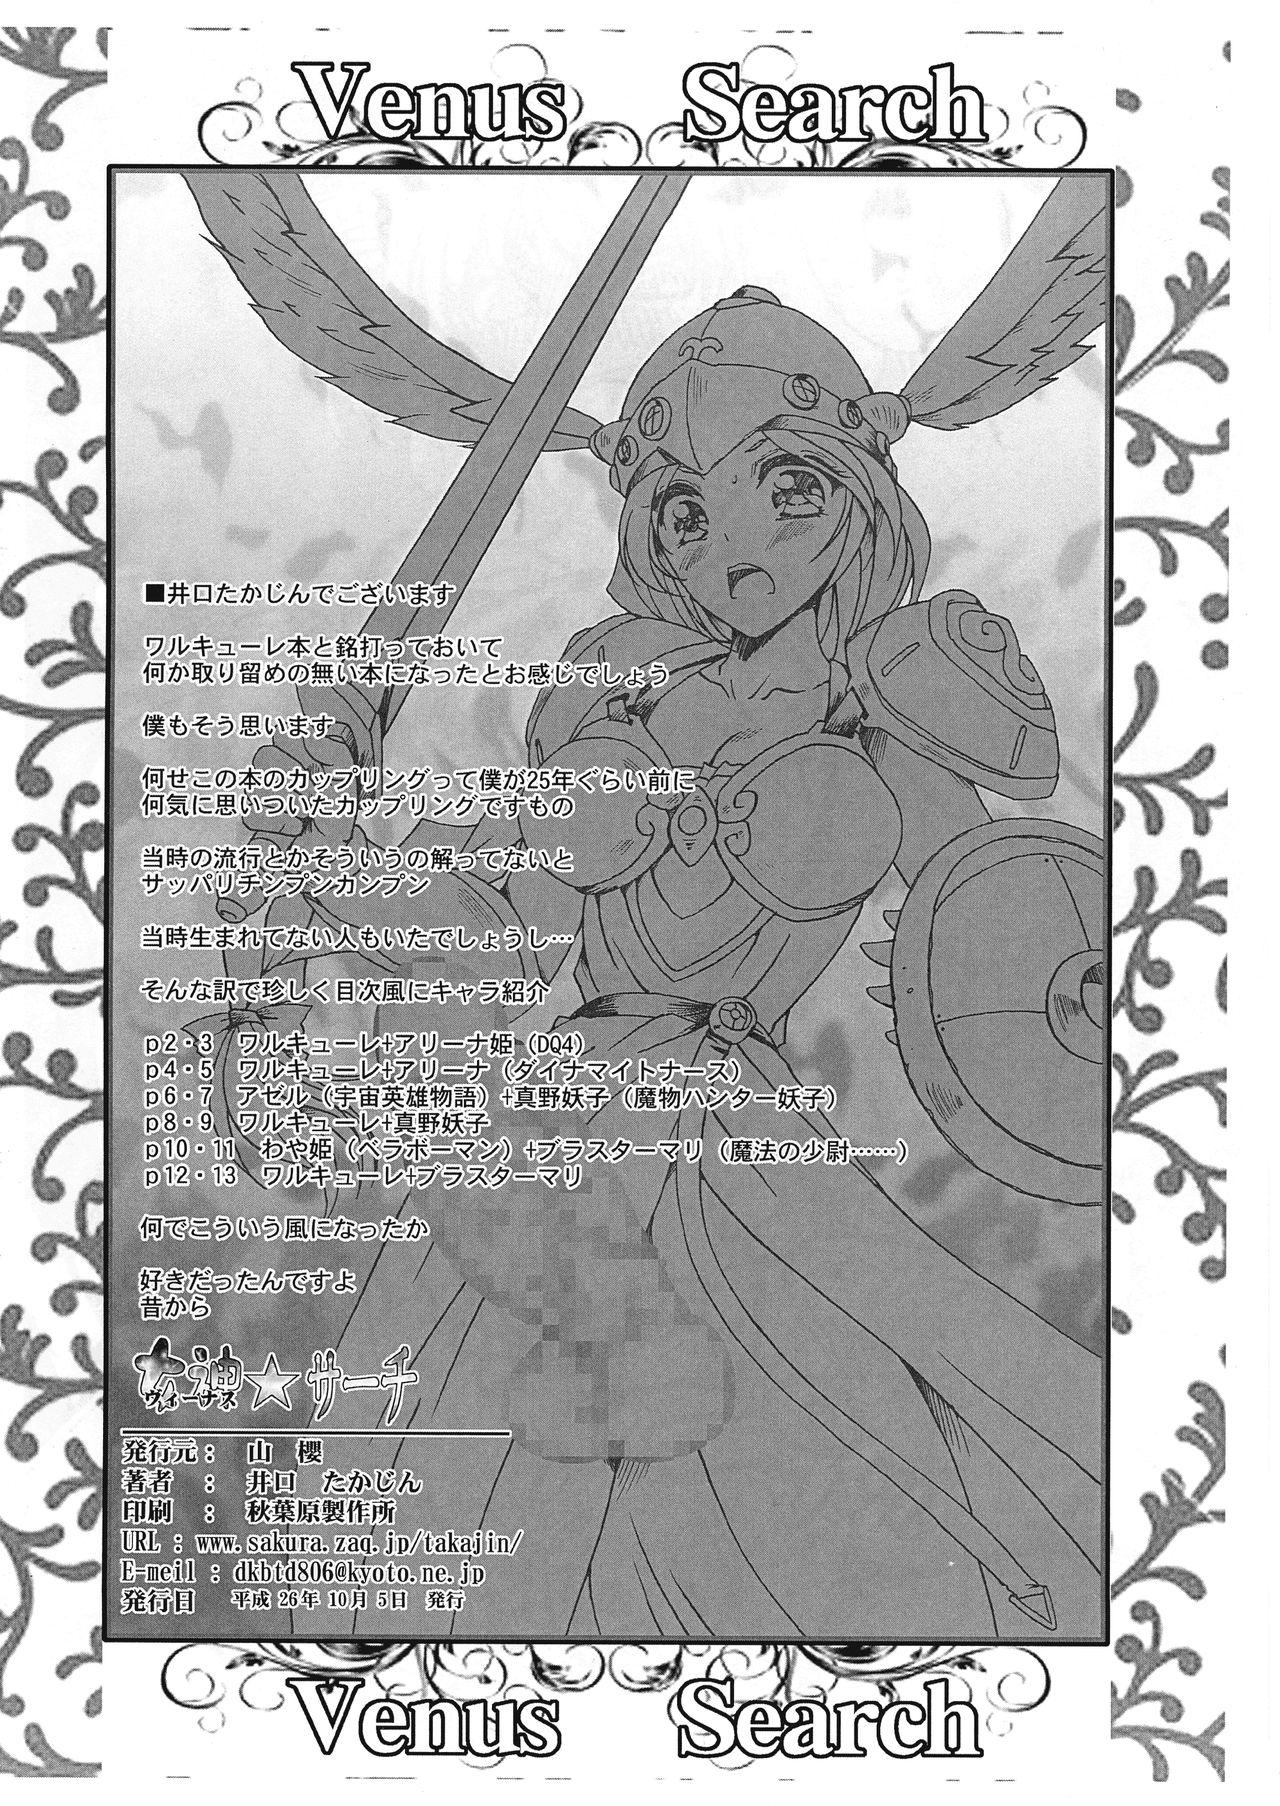 Ladyboy Megami ☆Search Venus Search 19yo - Page 2